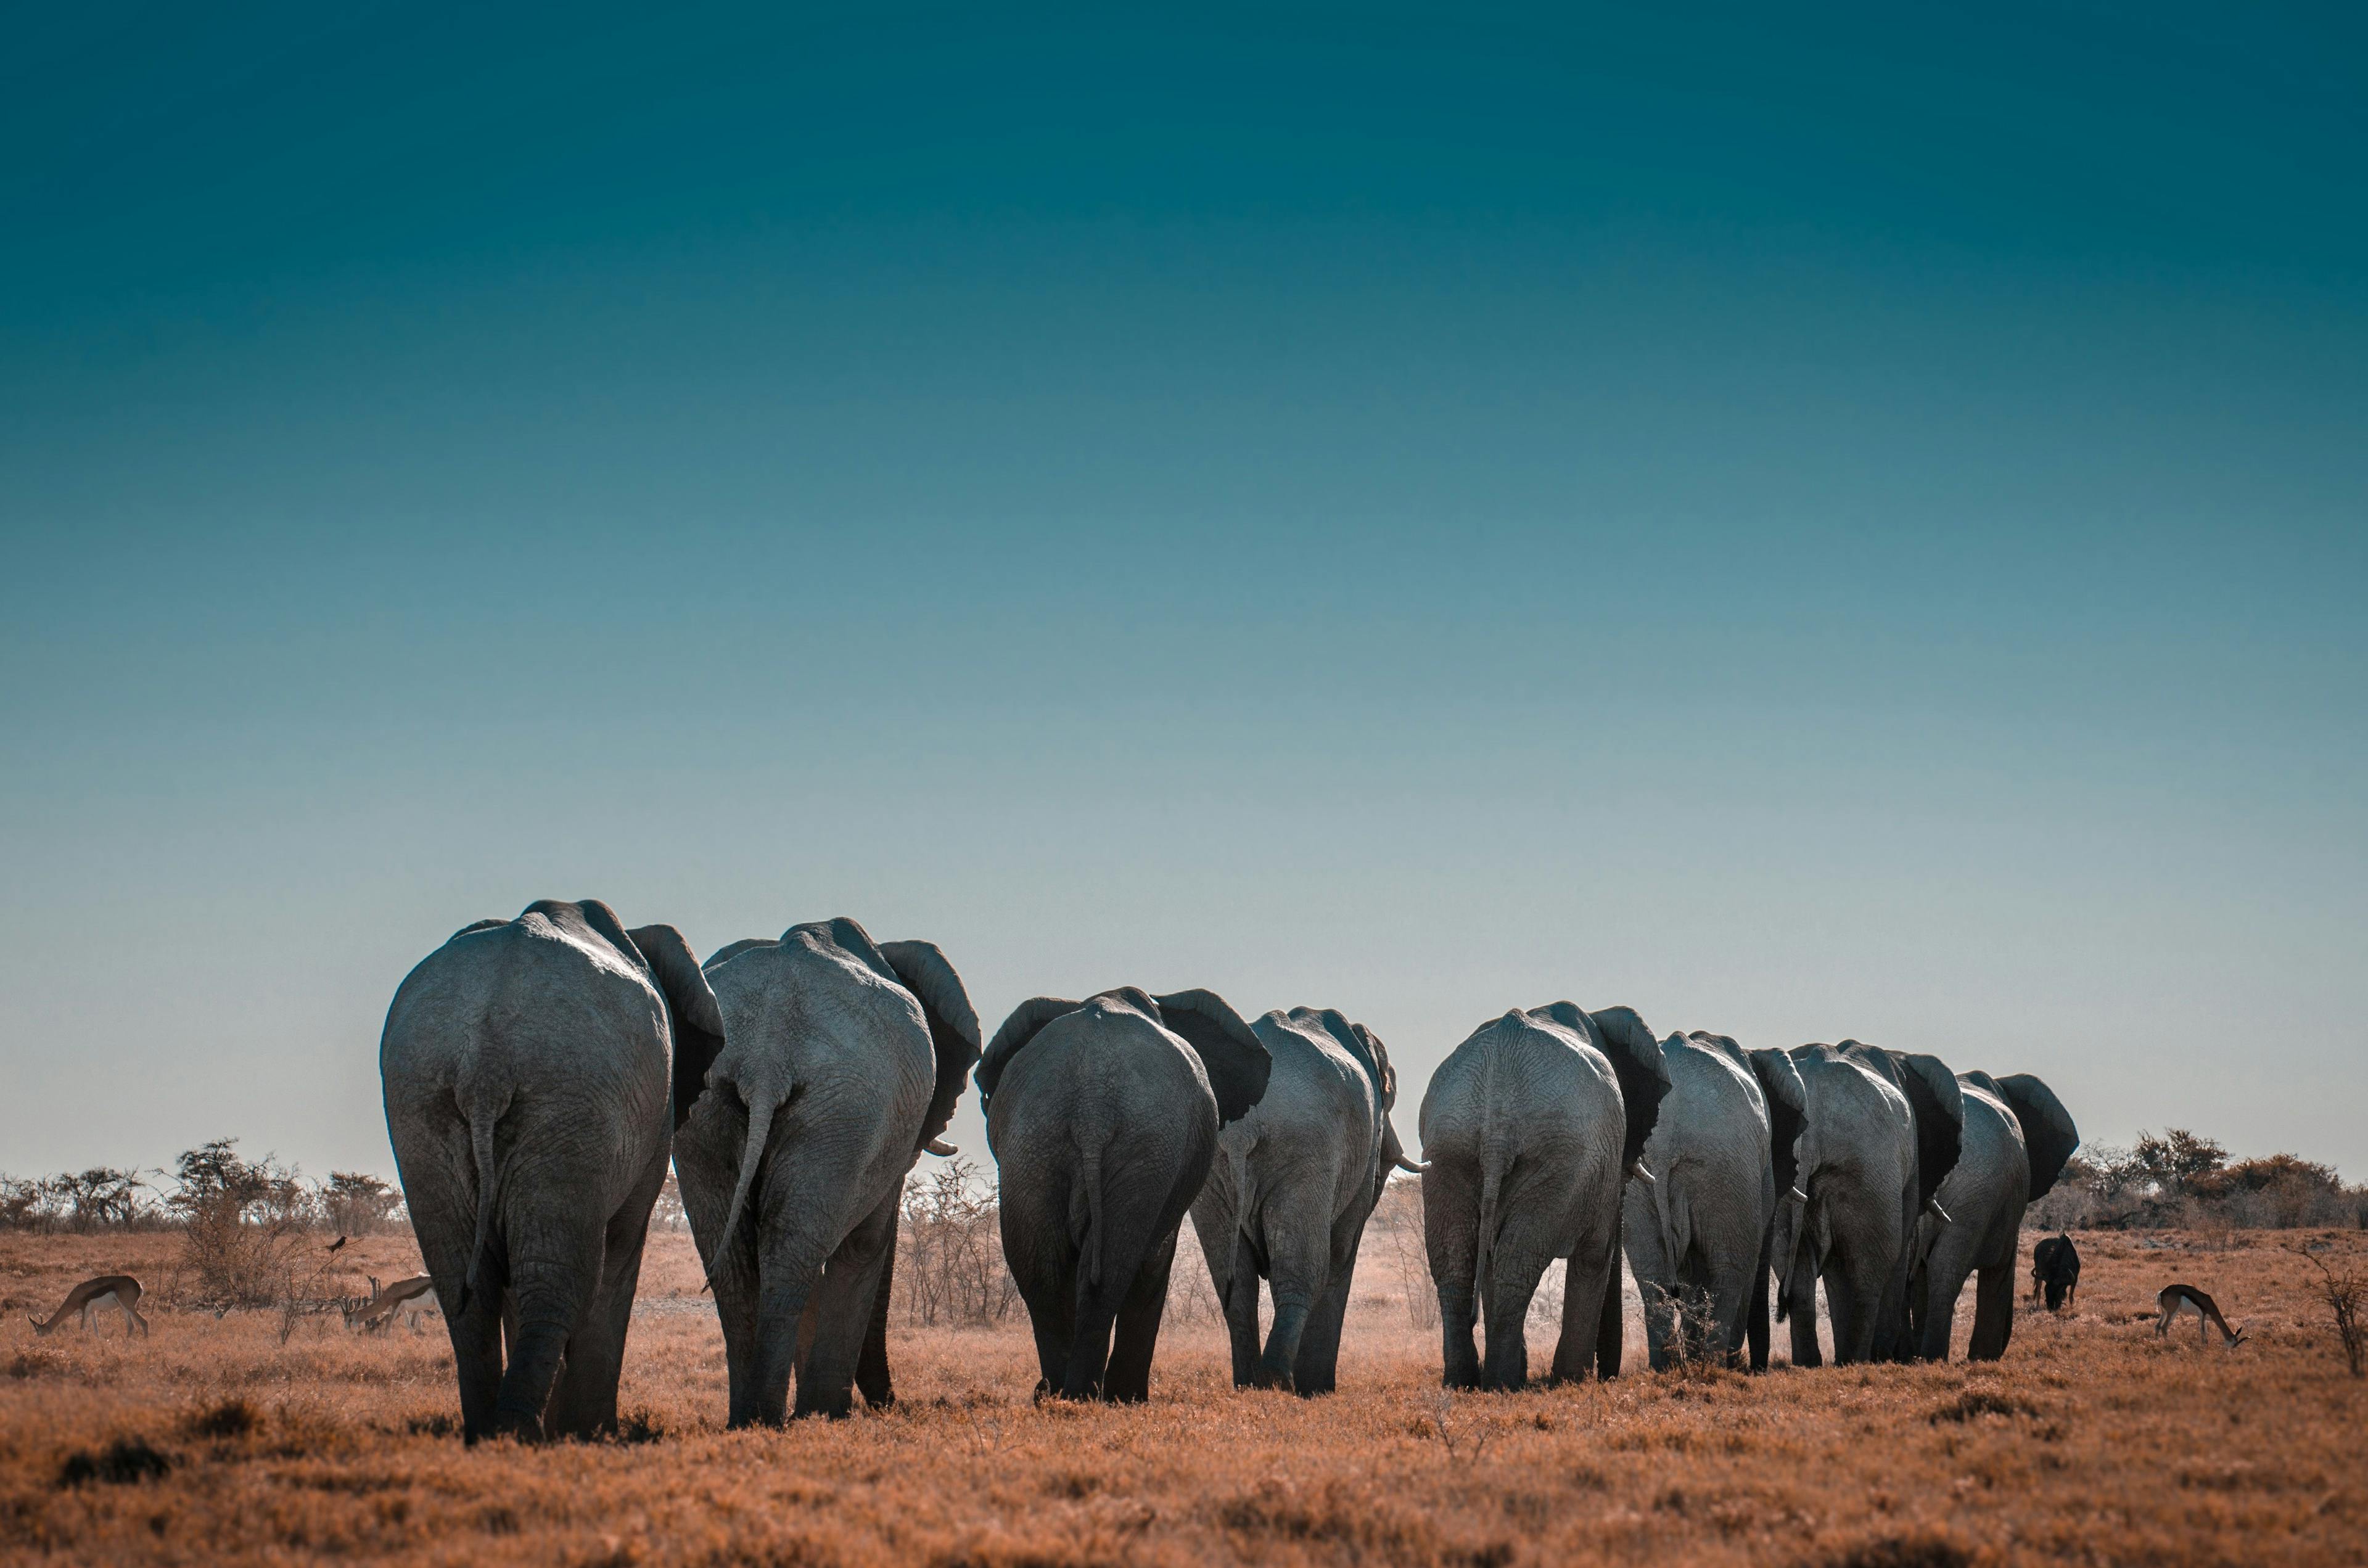 Elephants in Etosha National Park, Namibia.